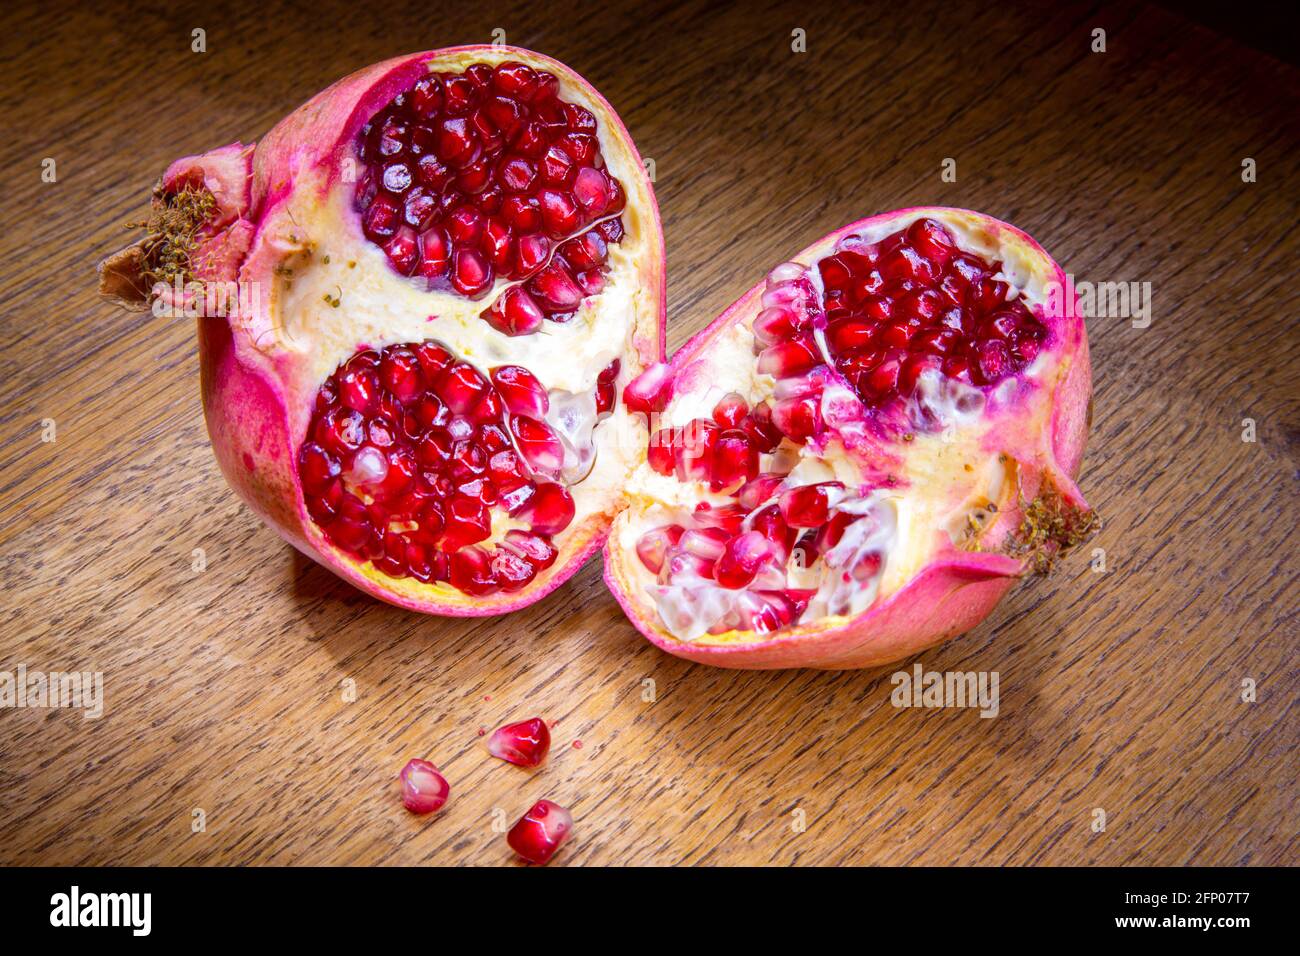 Pomegranate cut in half. Stock Photo